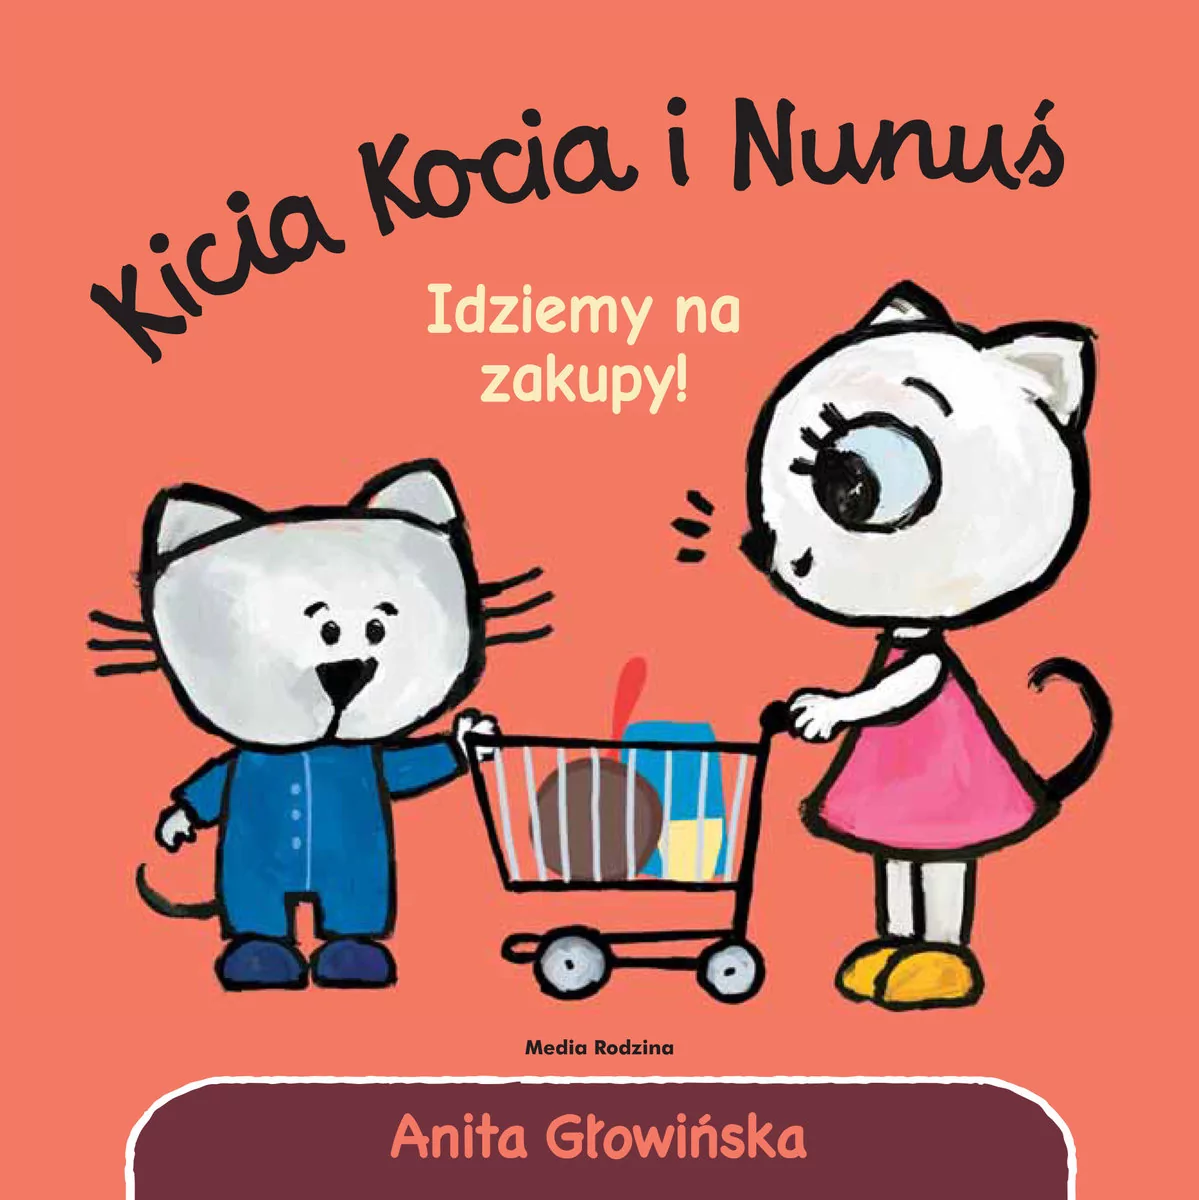 Media Rodzina Kicia Kocia i Nunuś. Idziemy na zakupy! LIT-41459